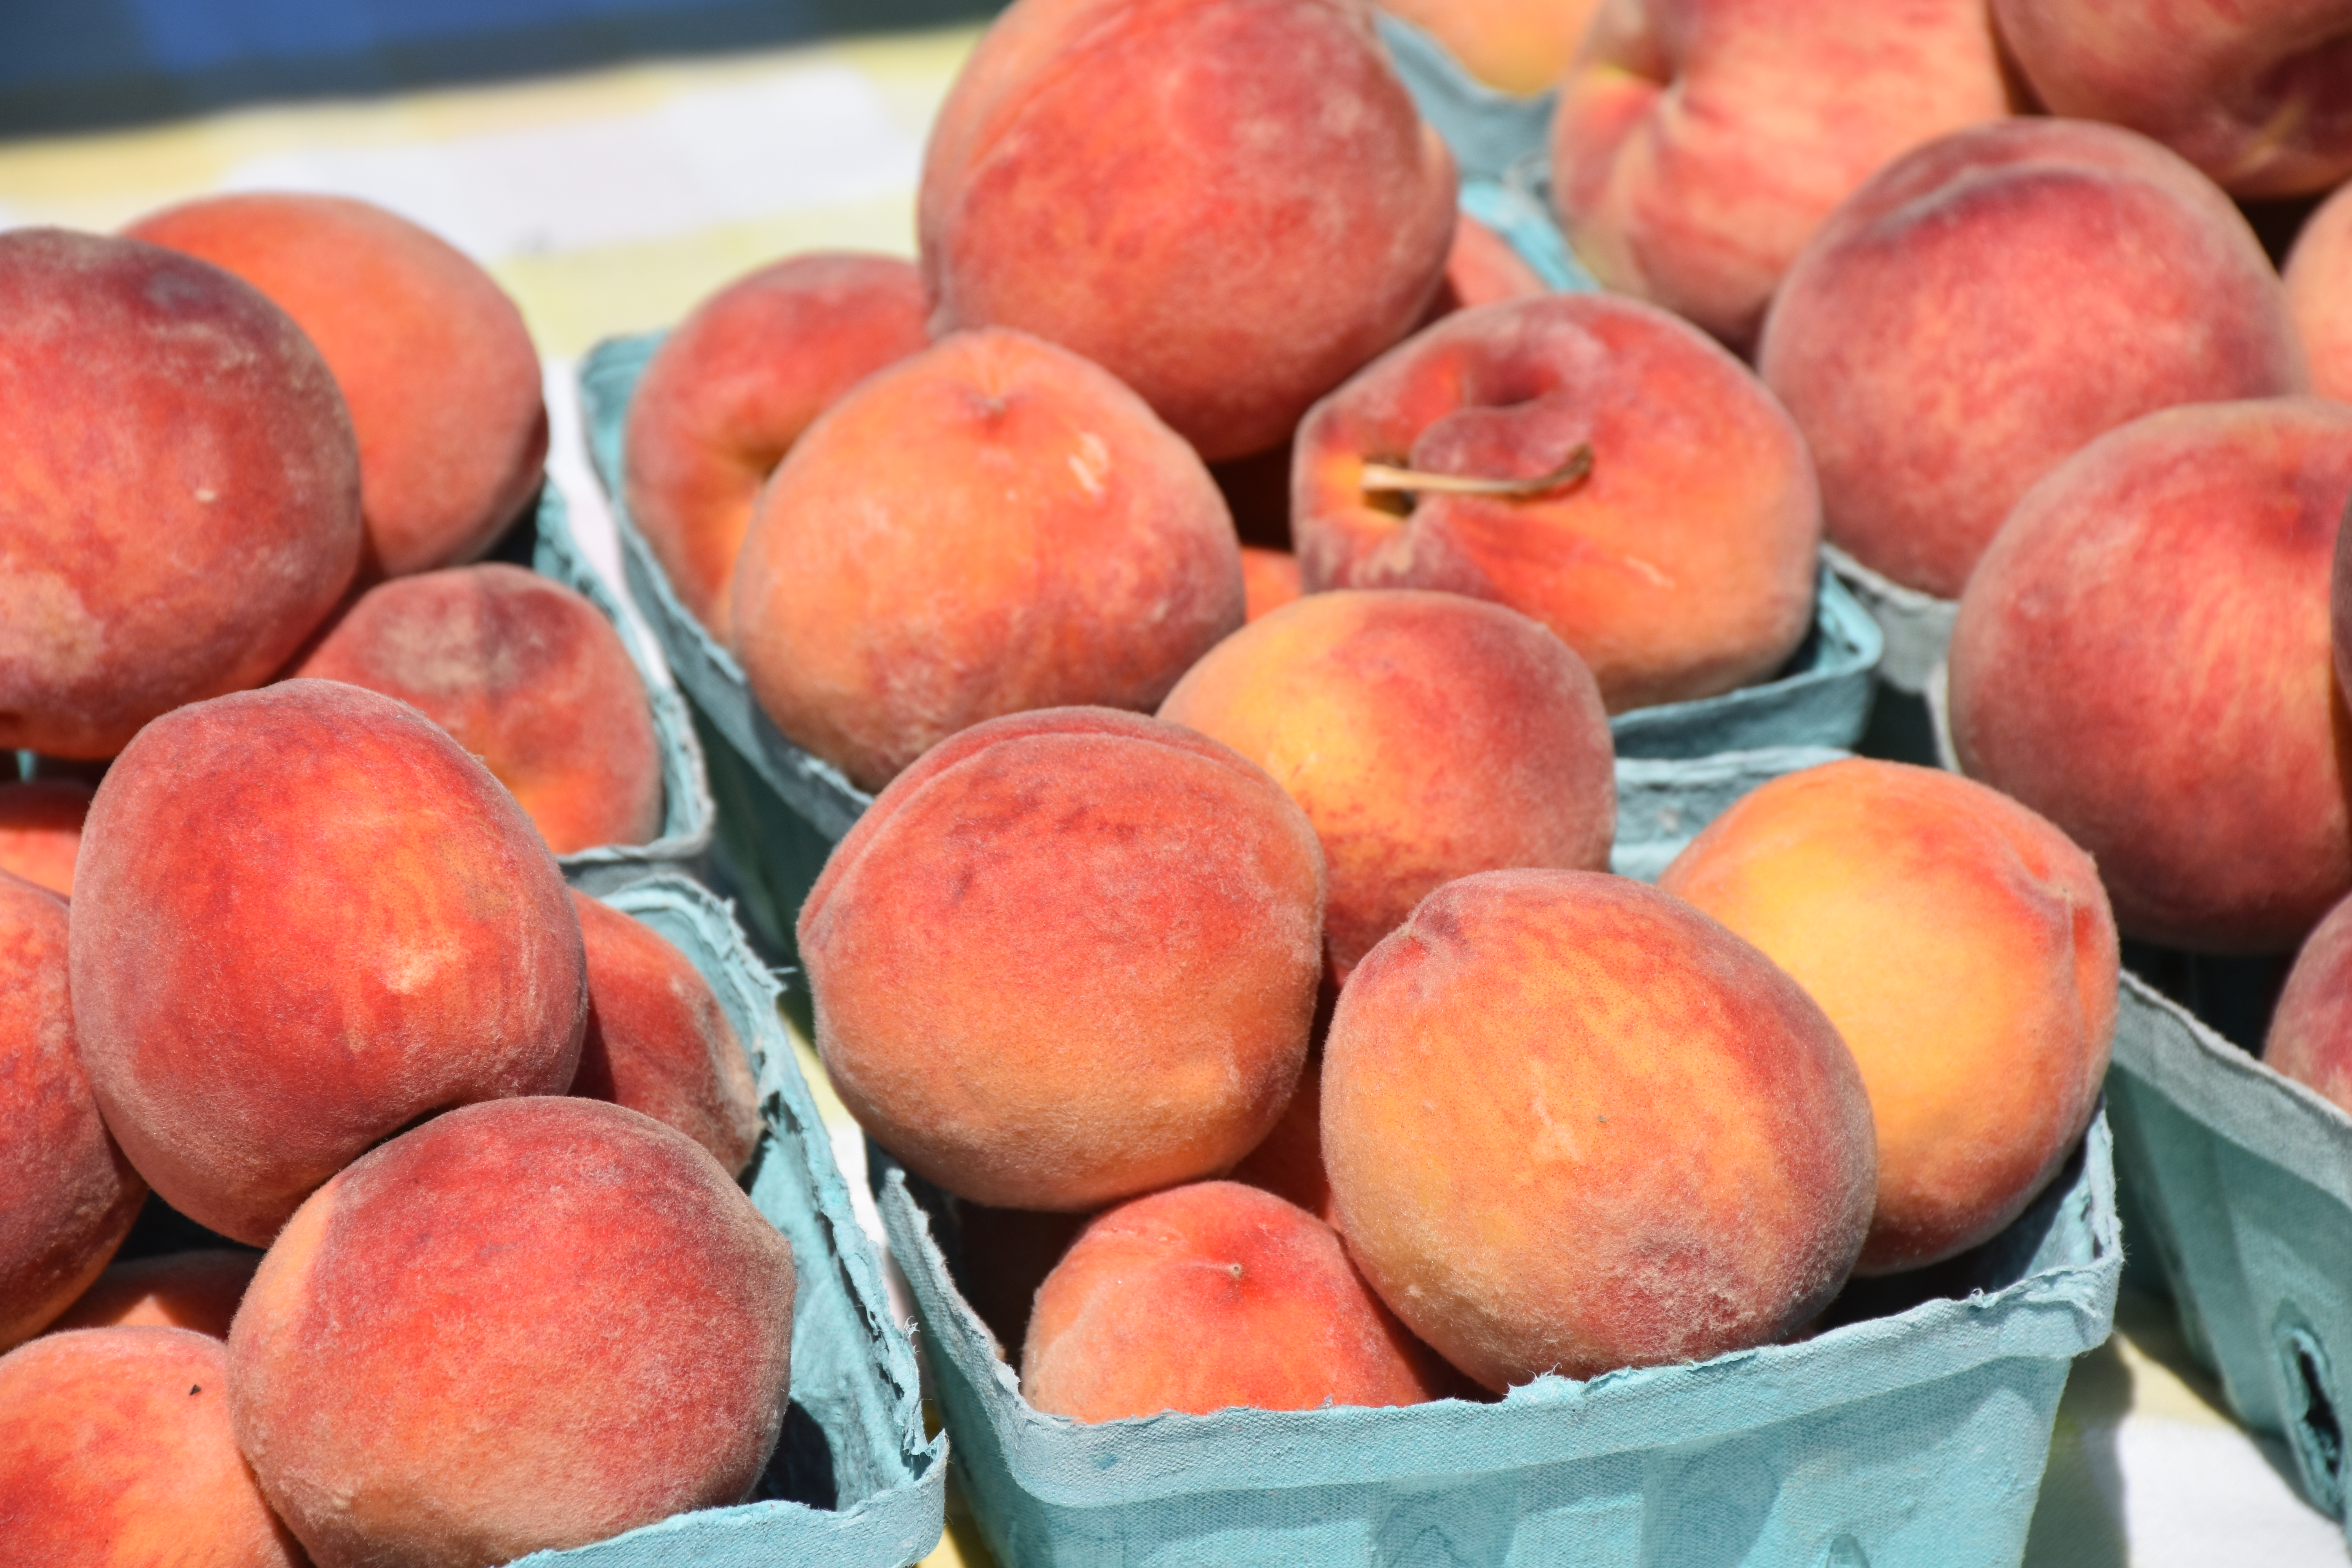 Farmer's Market peaches